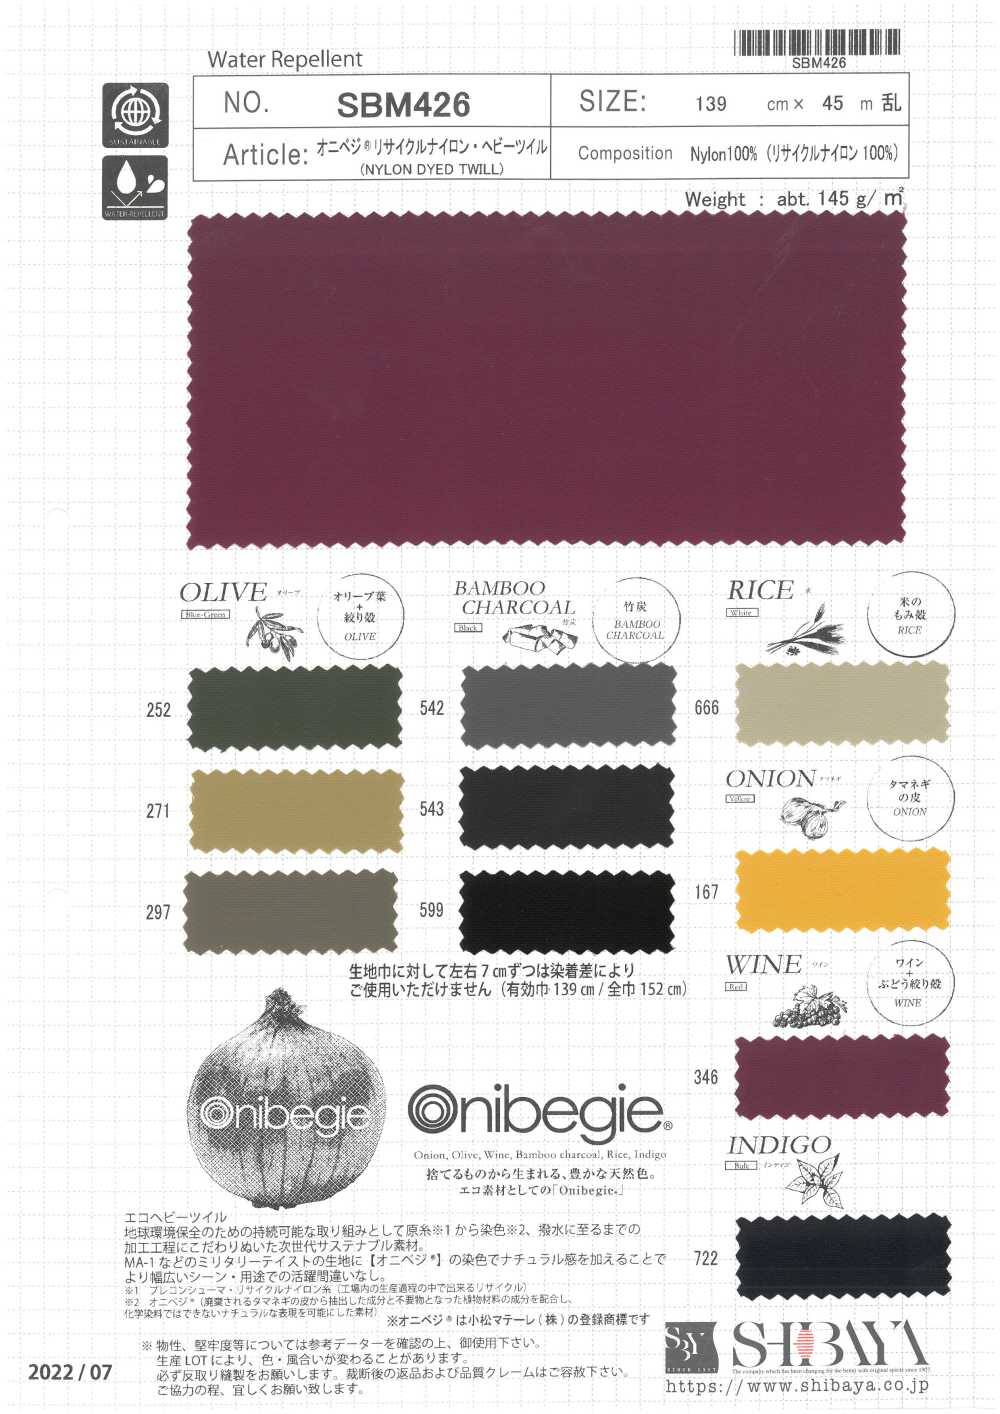 SBM426 ONIVEGE(R) Sarja Pesada De Nylon Reciclado[Têxtil / Tecido] SHIBAYA